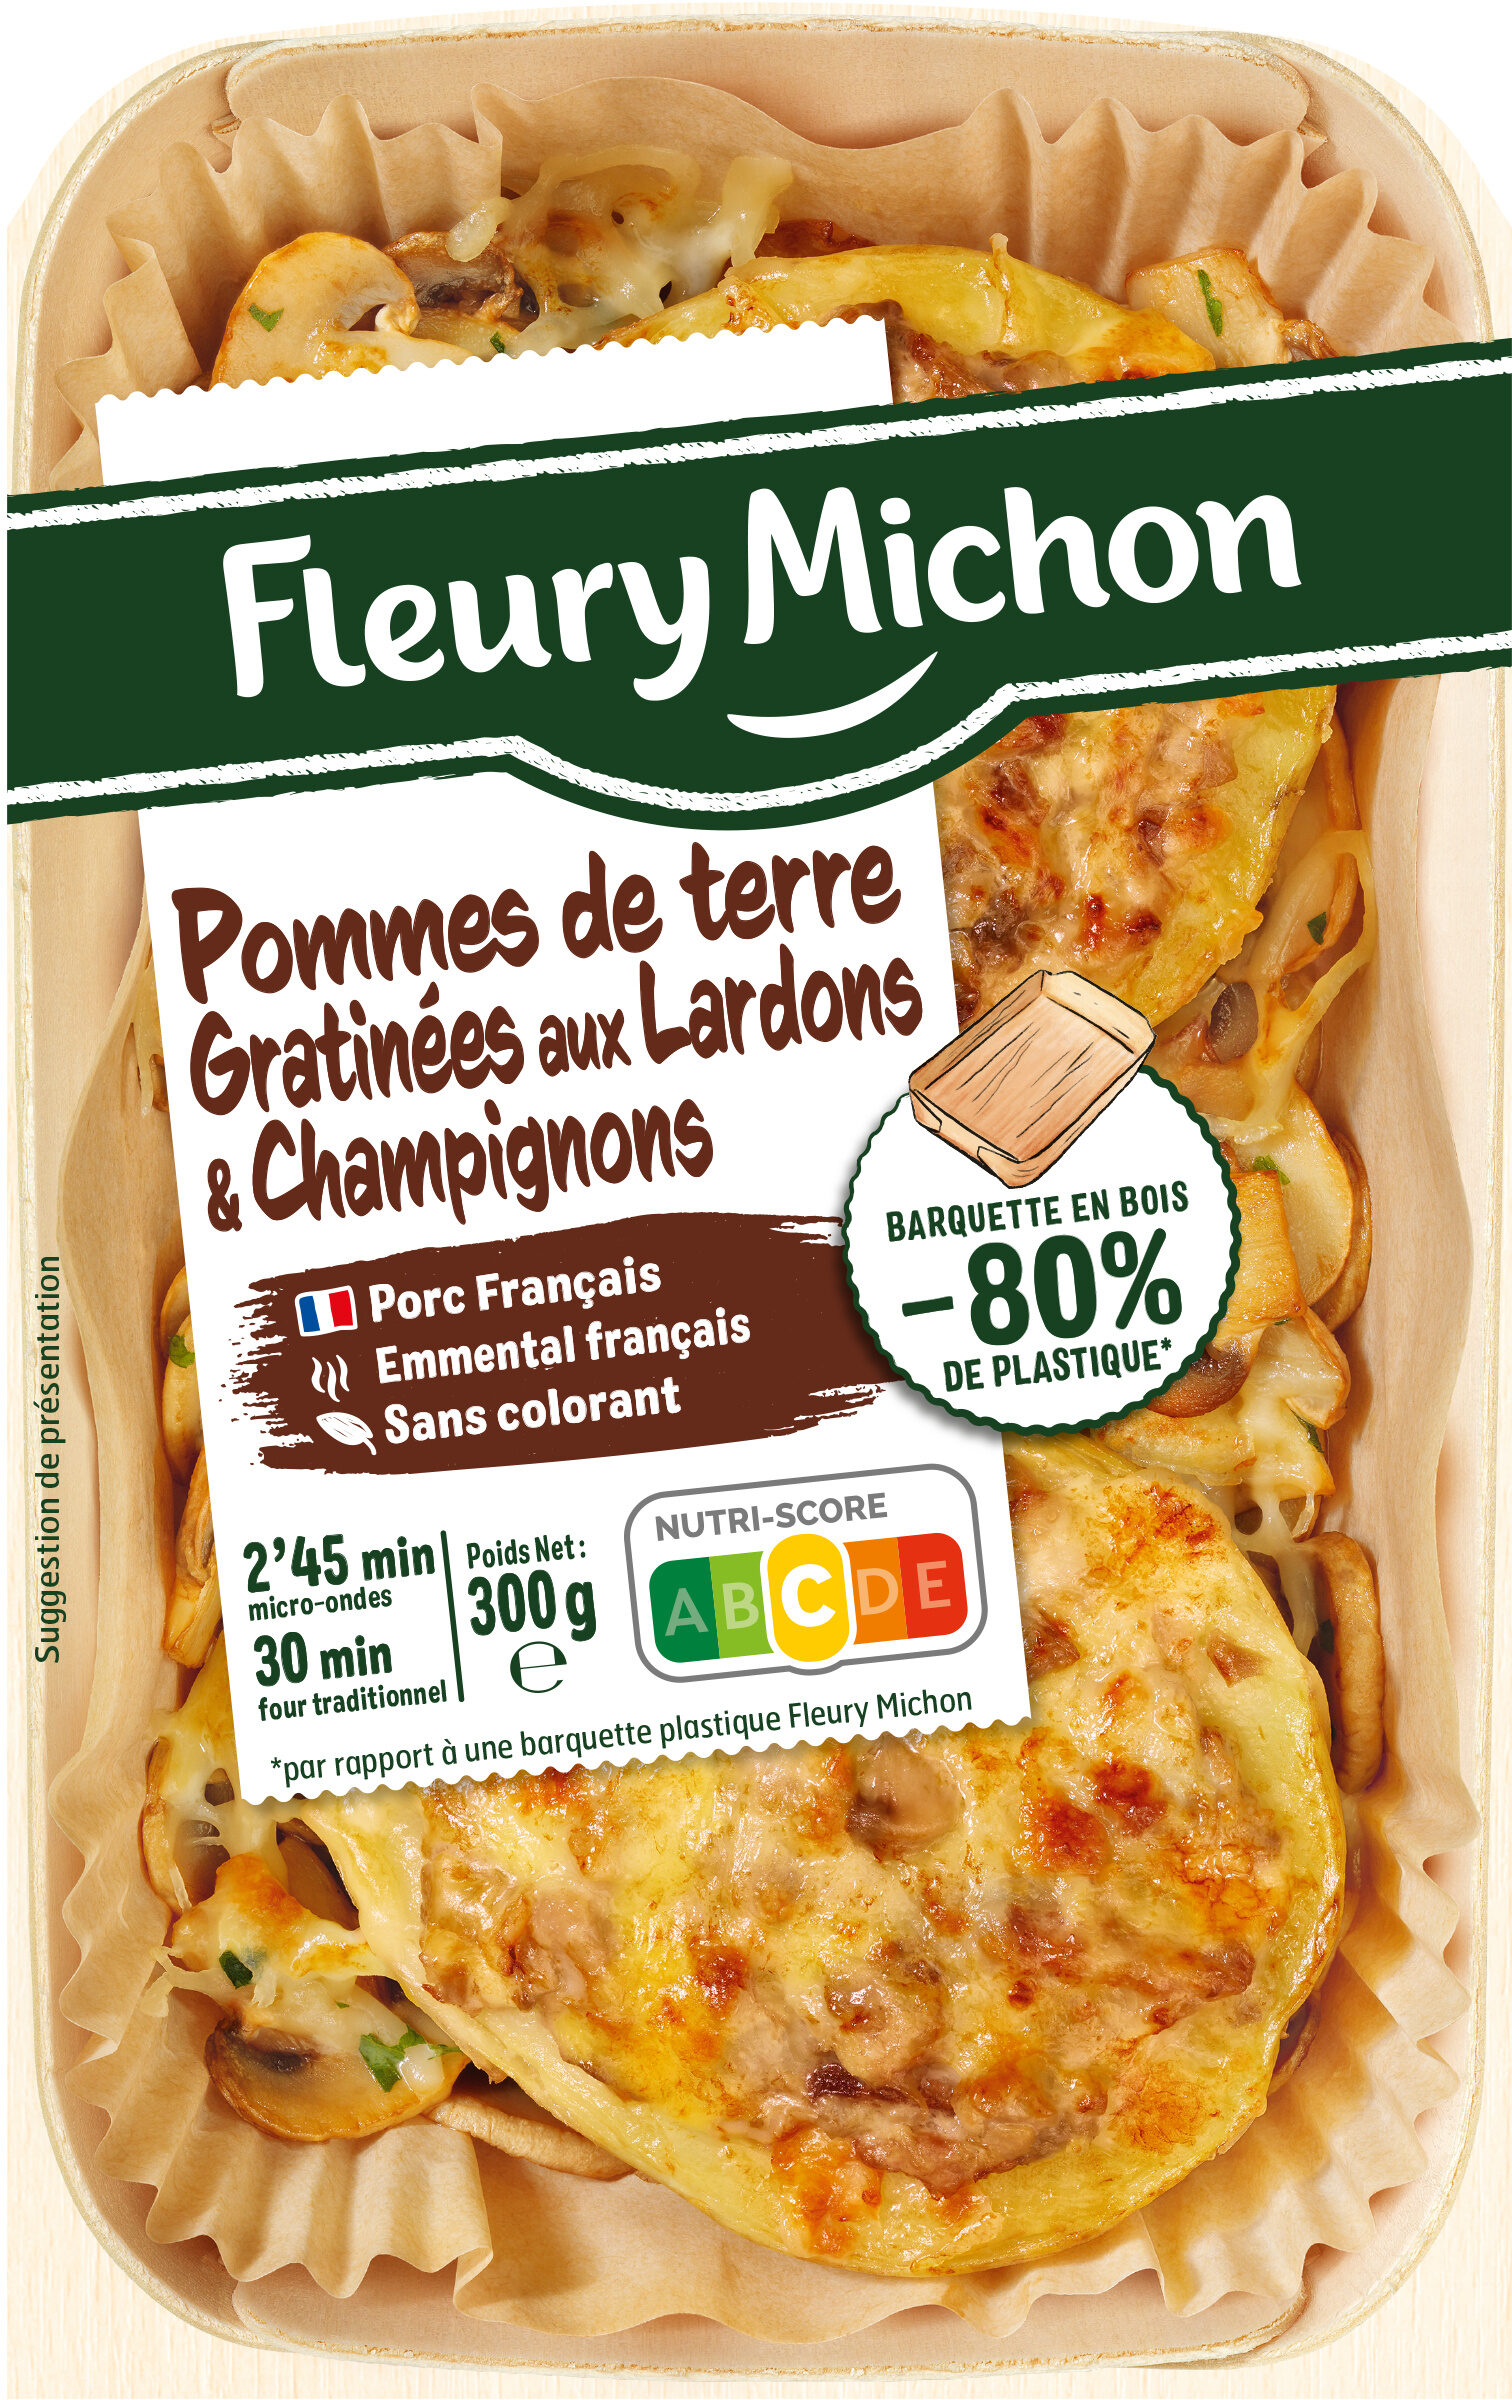 Pommes de terre gratinées aux lardons et champignons - Producto - fr